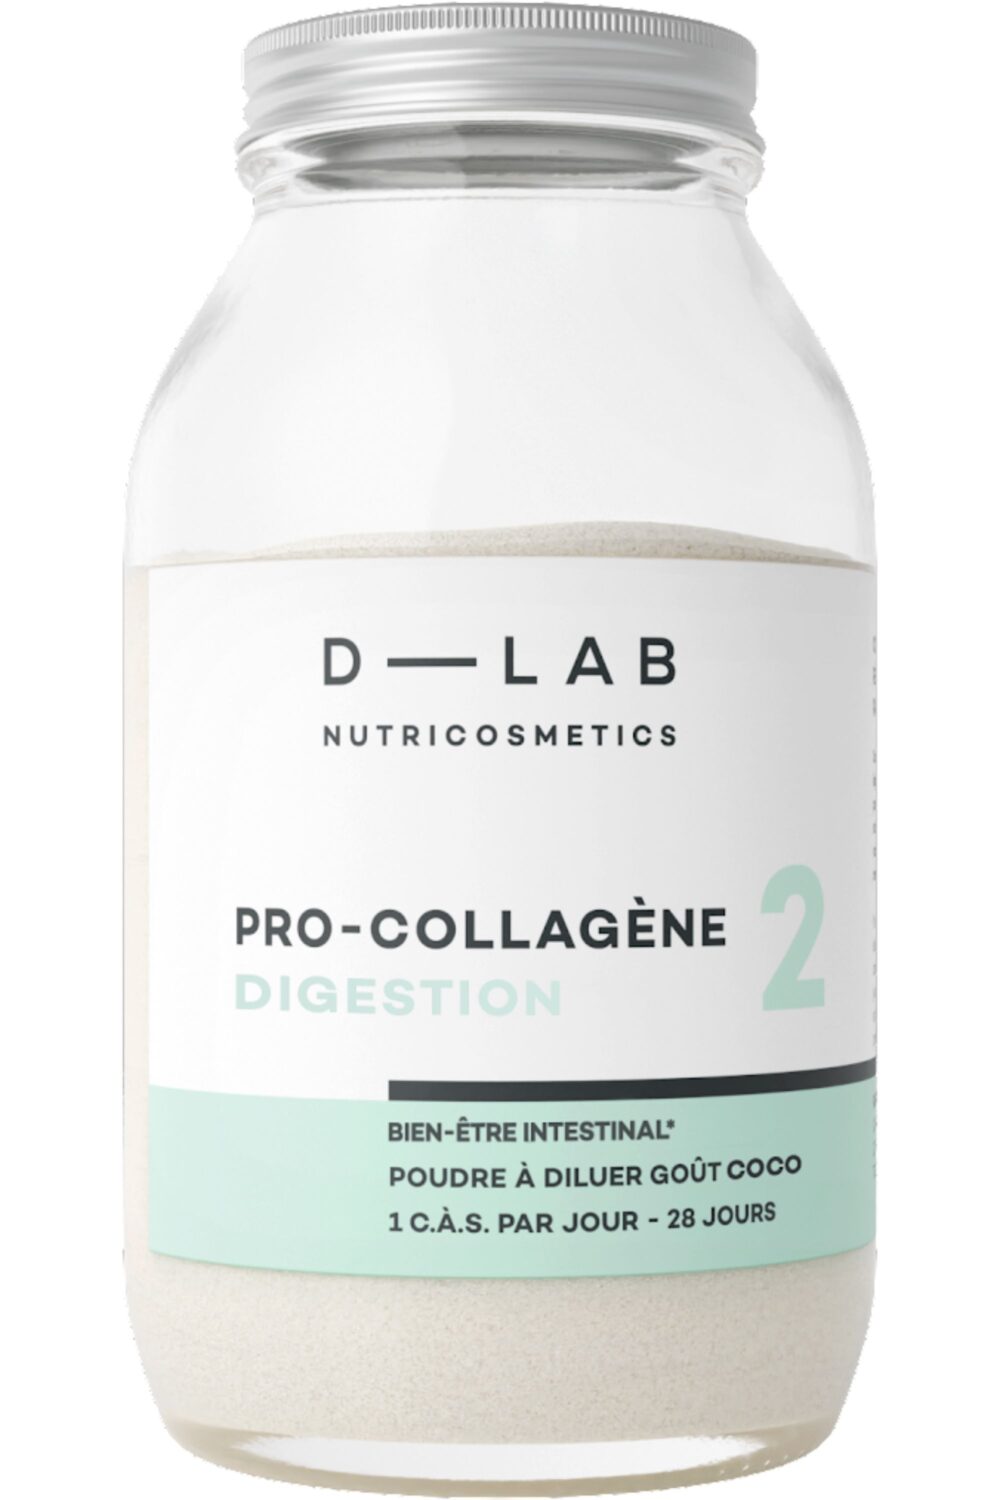 D-LAB Nutricosmetics - Poudre pro-collagène digestion goût coco